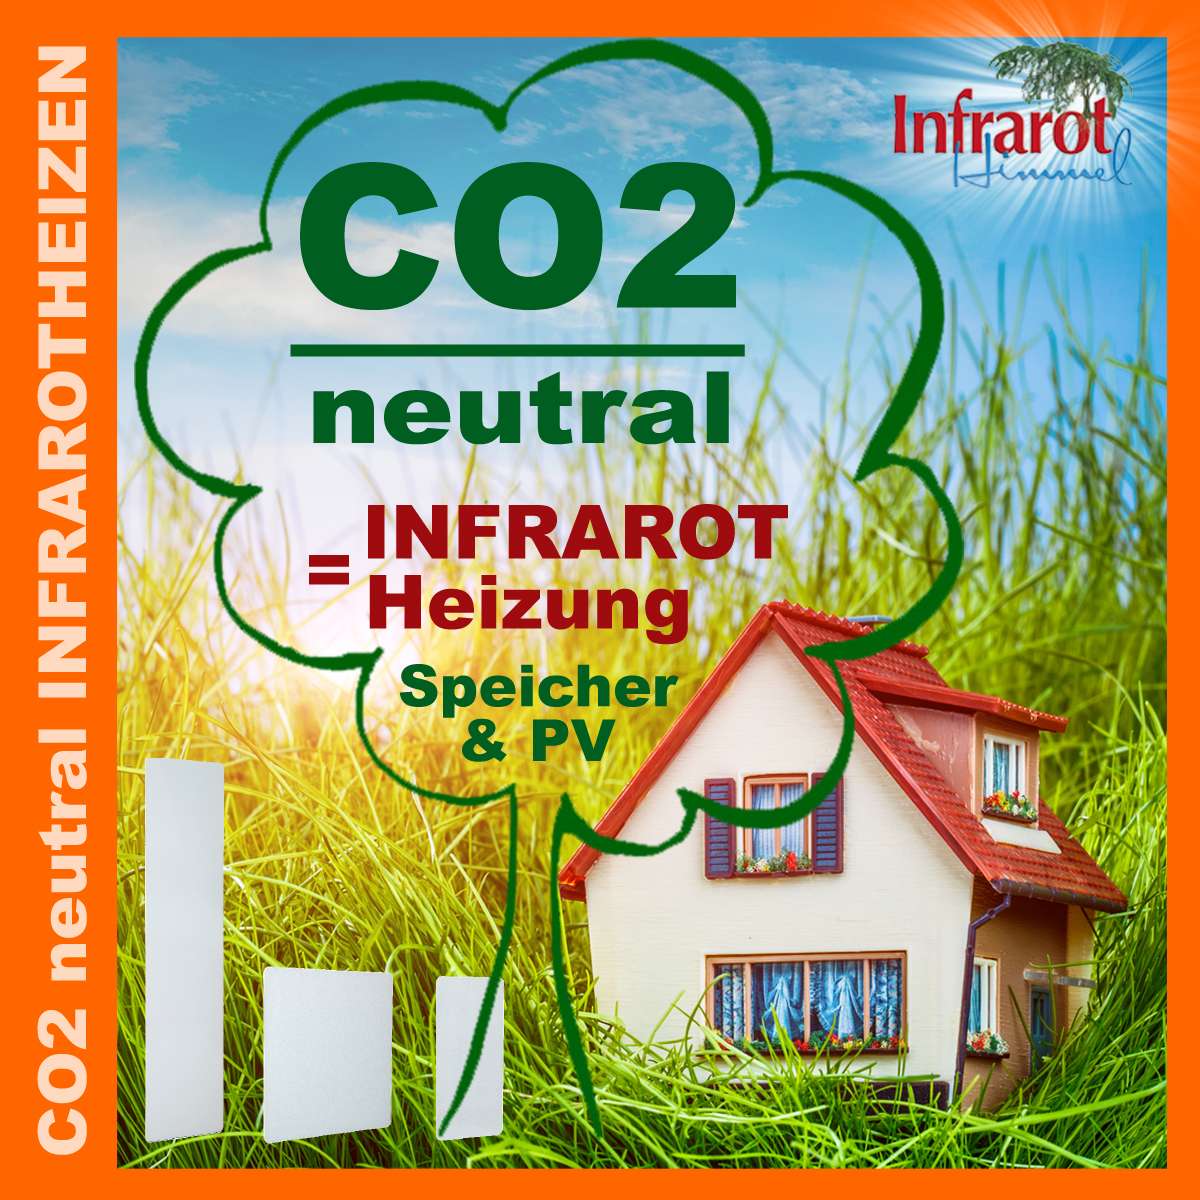 Infrarothimmel CO2 neutral Heizen – Manokin